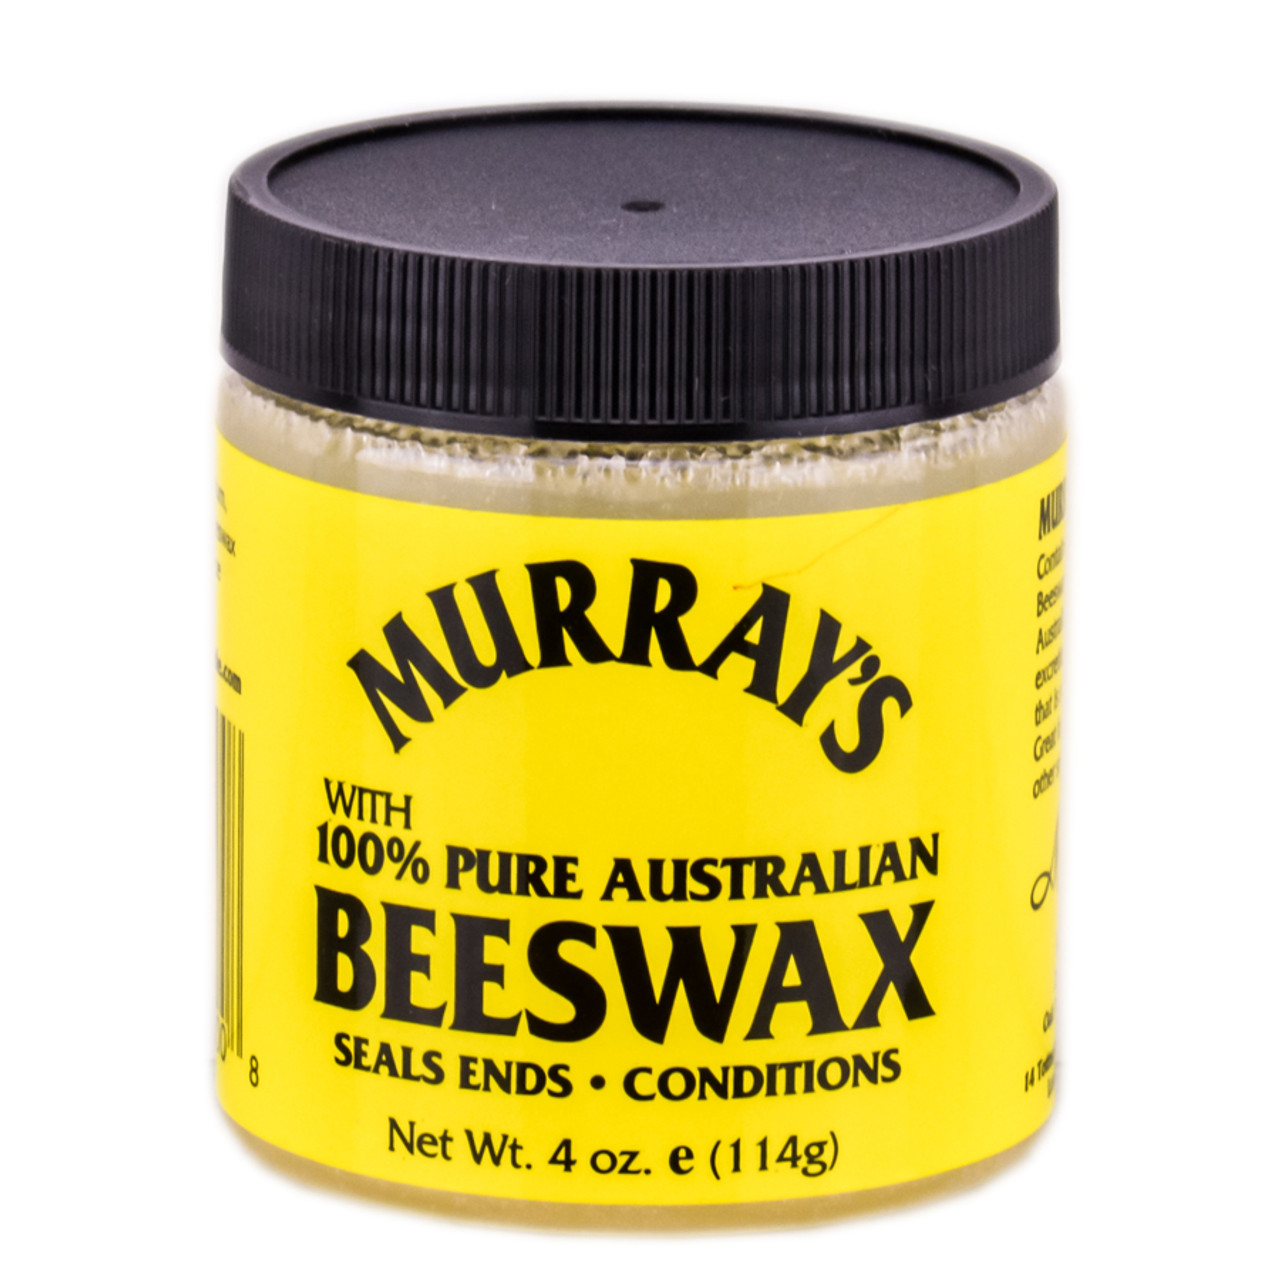 Murray's Edgewax Hair Dressing 